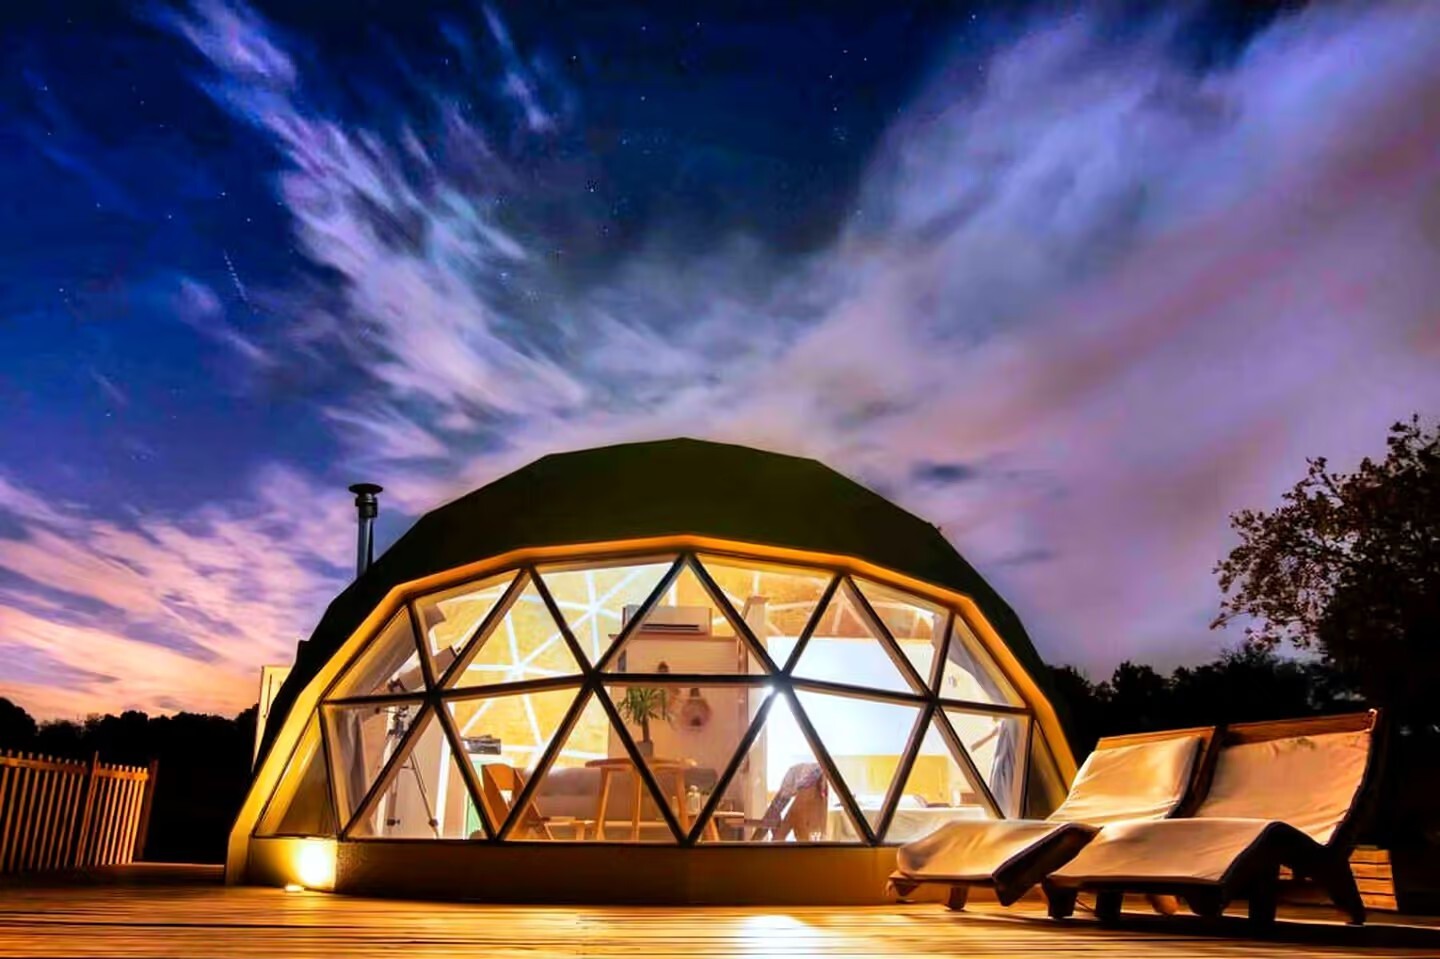 ແນວຄວາມຄິດການອອກແບບ tent ຂອງໂຮງແຮມ Dome 丨ທີມງານອອກແບບຊັ້ນຫນຶ່ງ